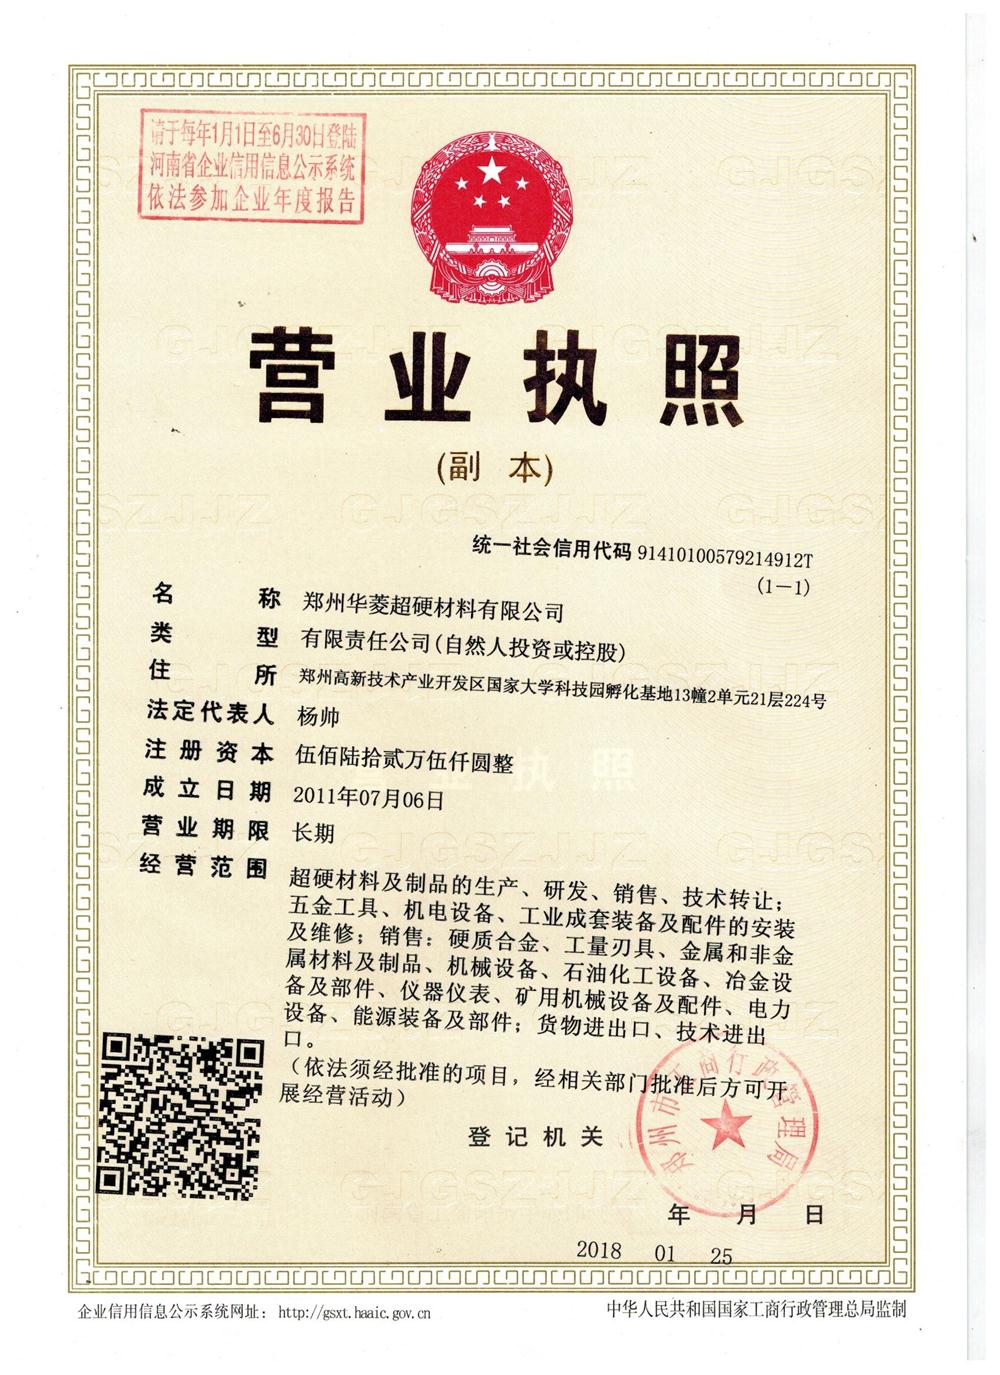 郑州华菱超硬材料有限公司营业执照